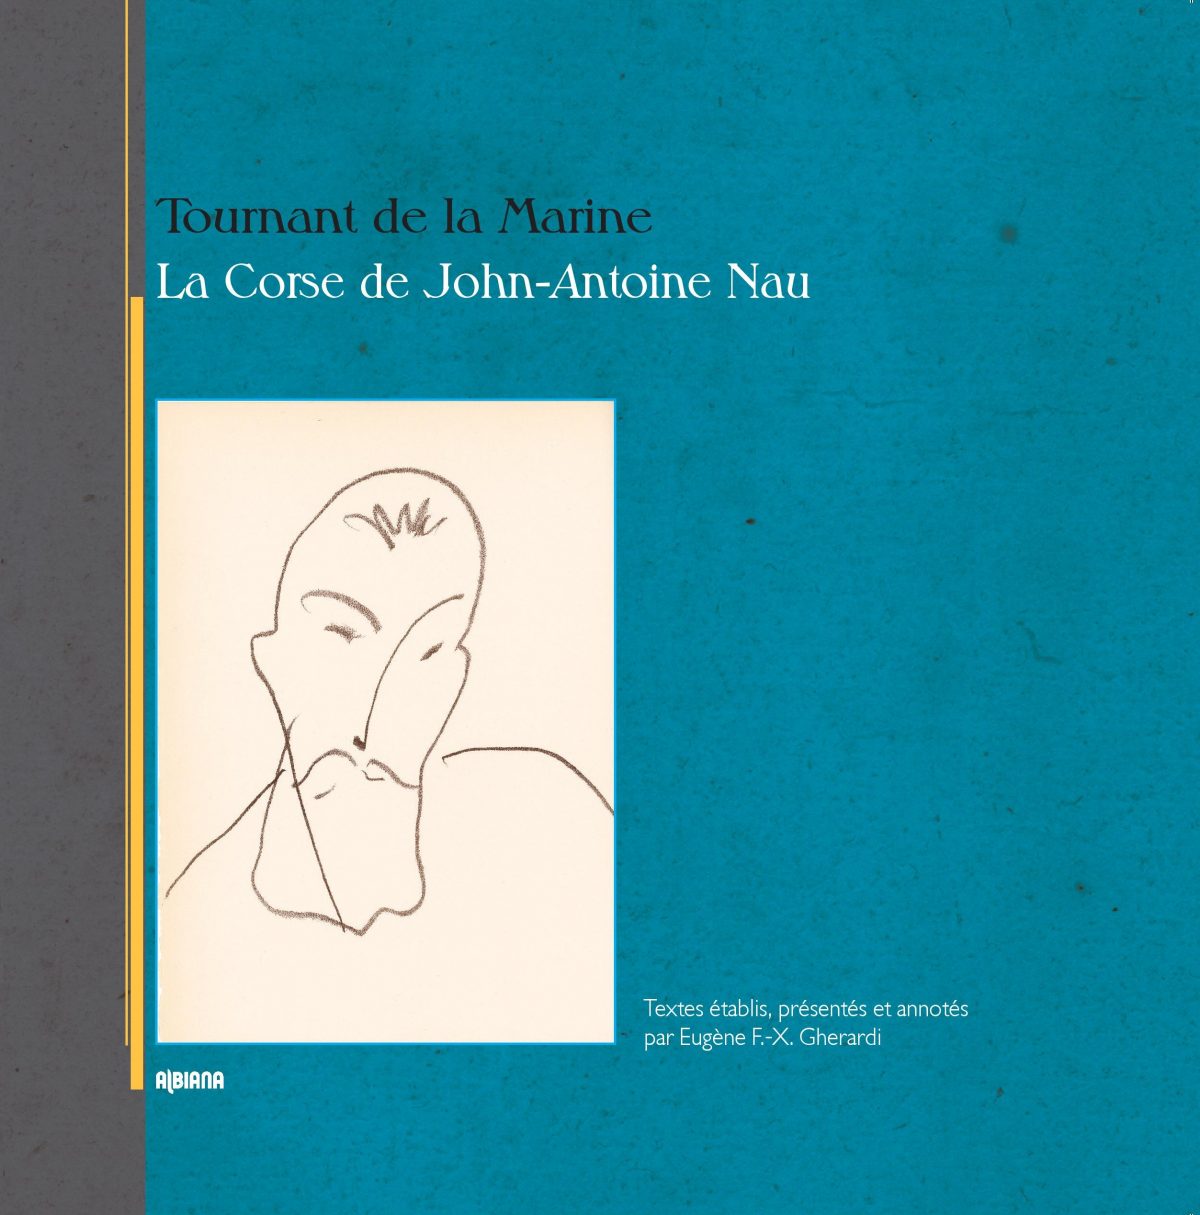 Tournant de la Marine, La Corse de John-Antoine Nau 1909-1916, Ajaccio : Albiana, 2016.